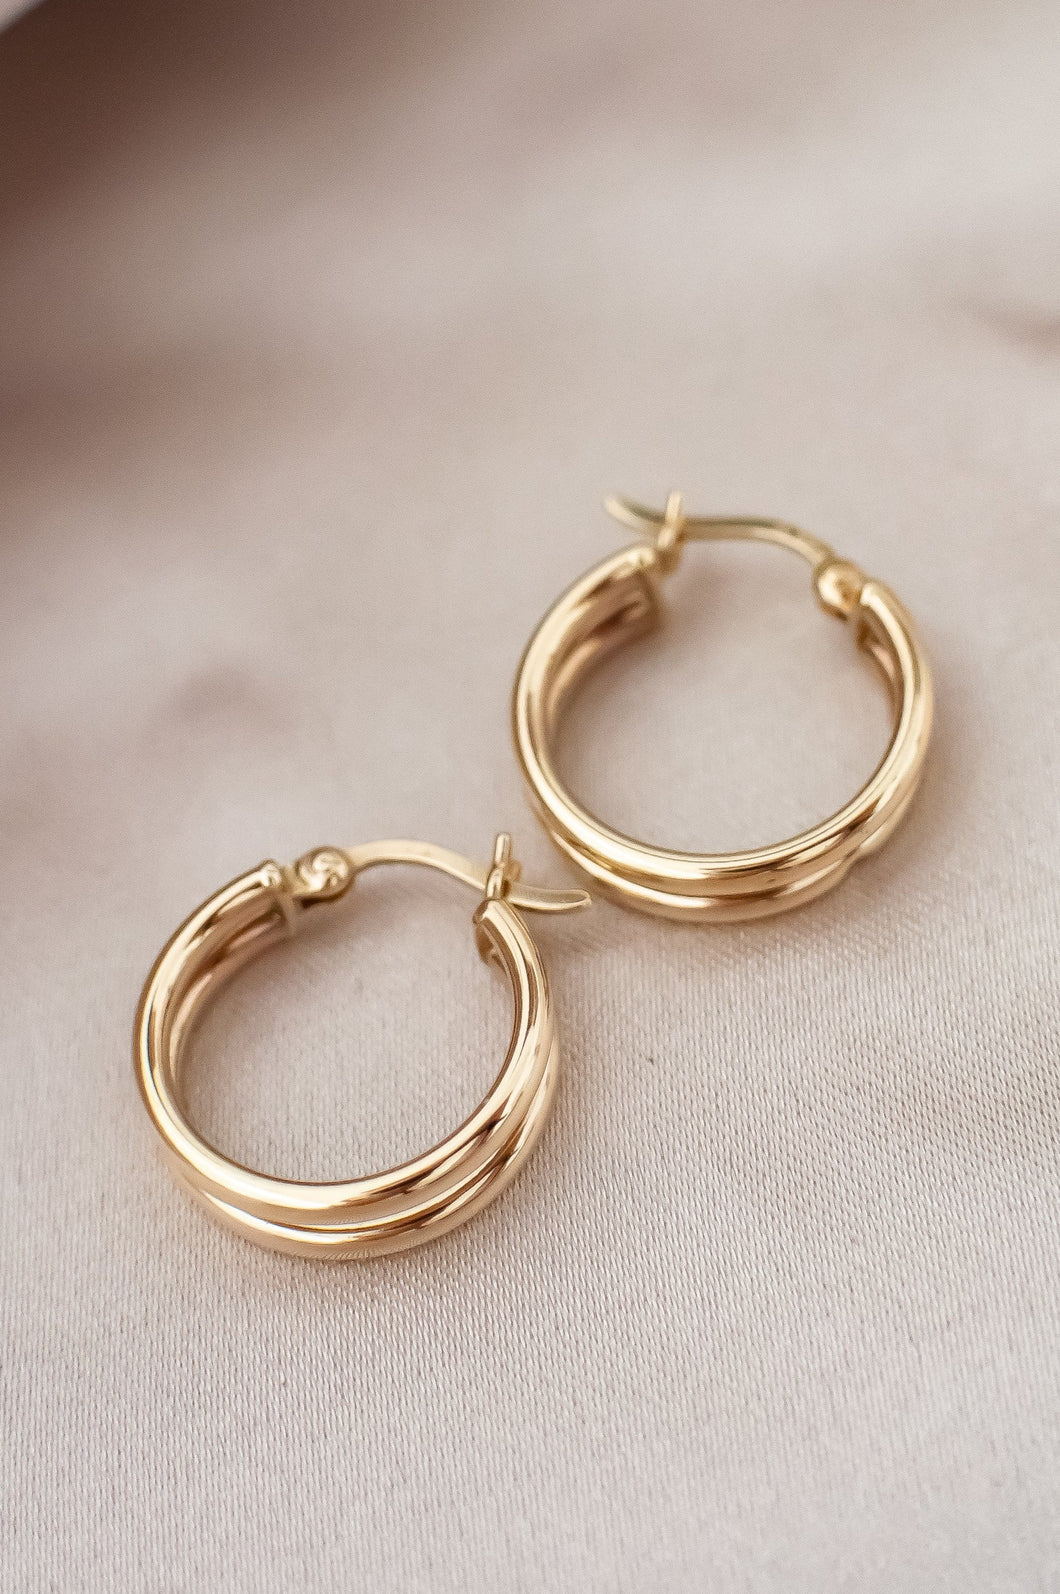  9ct Gold Hoop Earrings, Delross Design Jeweller, Brisbane Jeweller